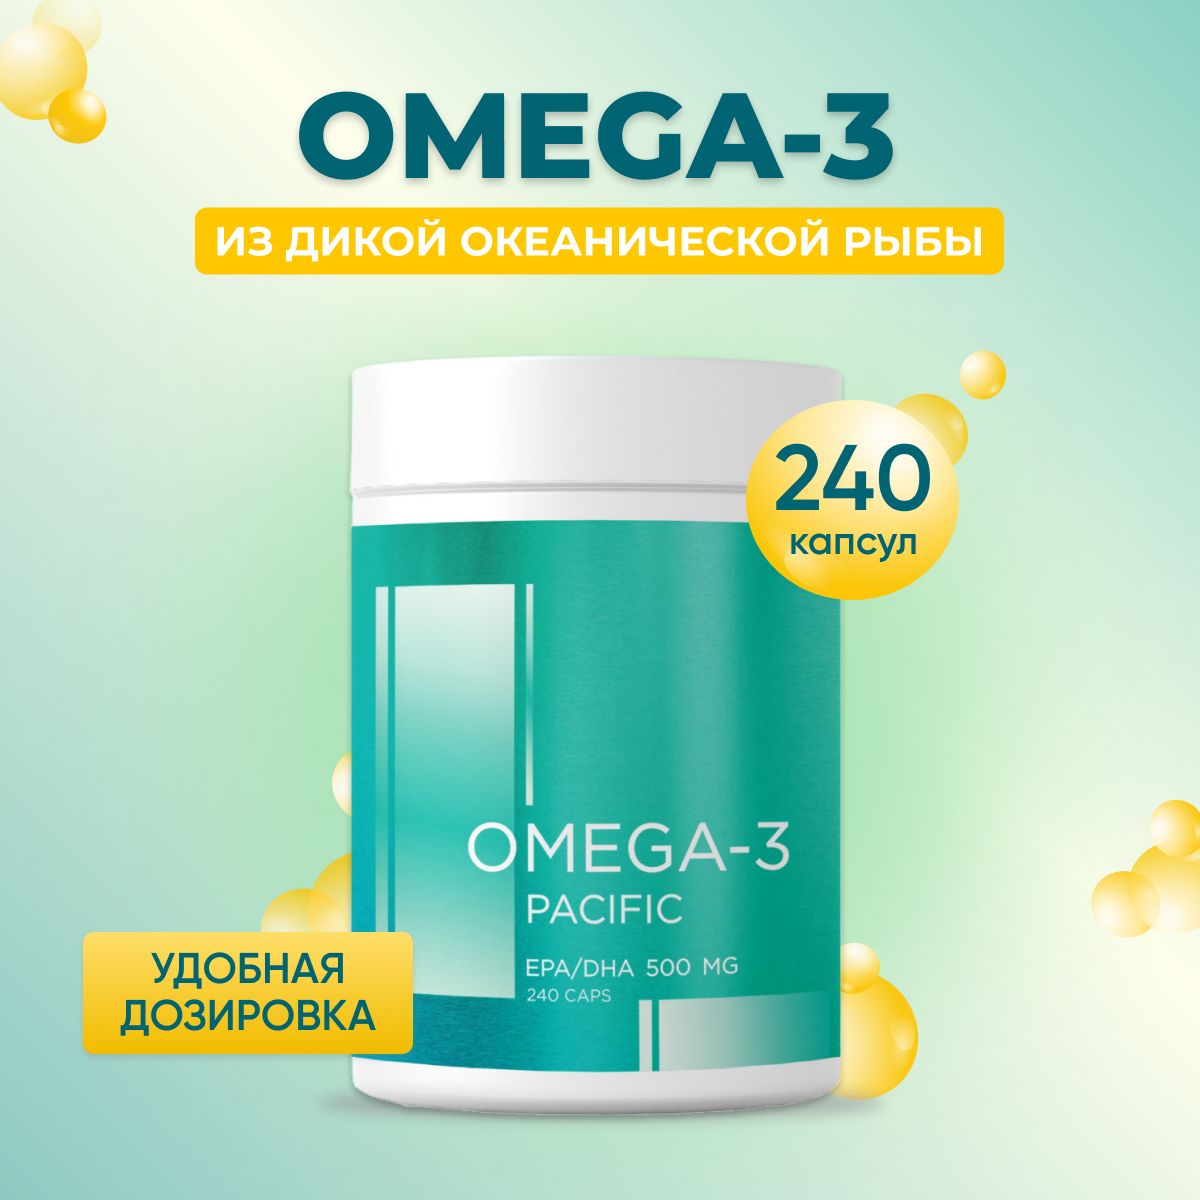 Омега 3 500 мг, 240 капс, витамины для женщин и мужчин, ПНЖК Omega 3, Reflexion, Рыбий жир в капсулах для взрослых и детей